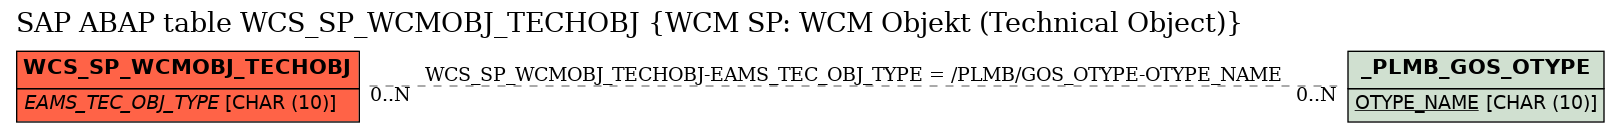 E-R Diagram for table WCS_SP_WCMOBJ_TECHOBJ (WCM SP: WCM Objekt (Technical Object))